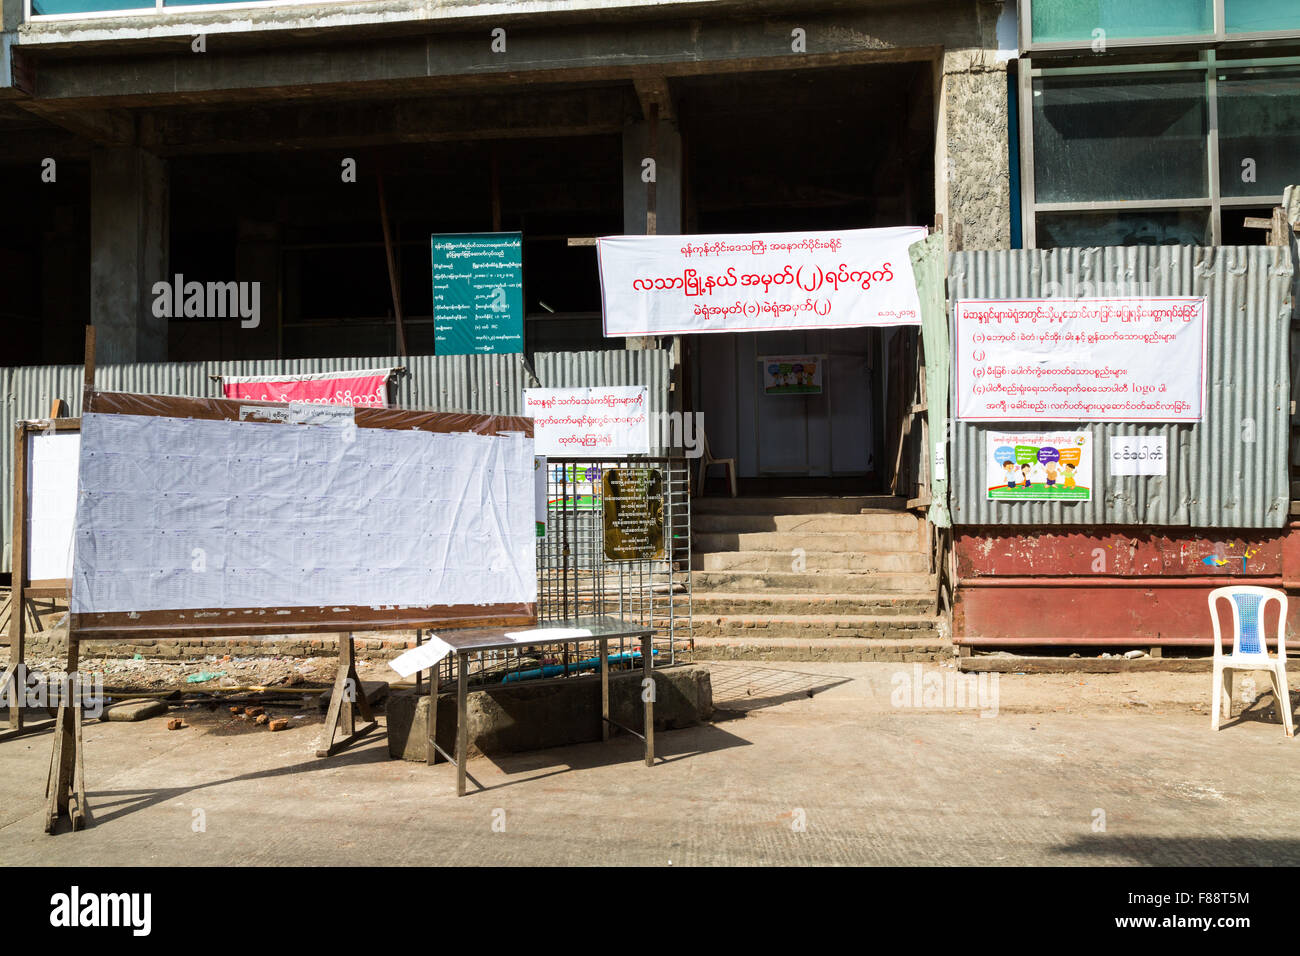 Bureau de vote à l'élection générale du Myanmar où Aung San Suu Kyi a remporté la majorité de la NLD Banque D'Images